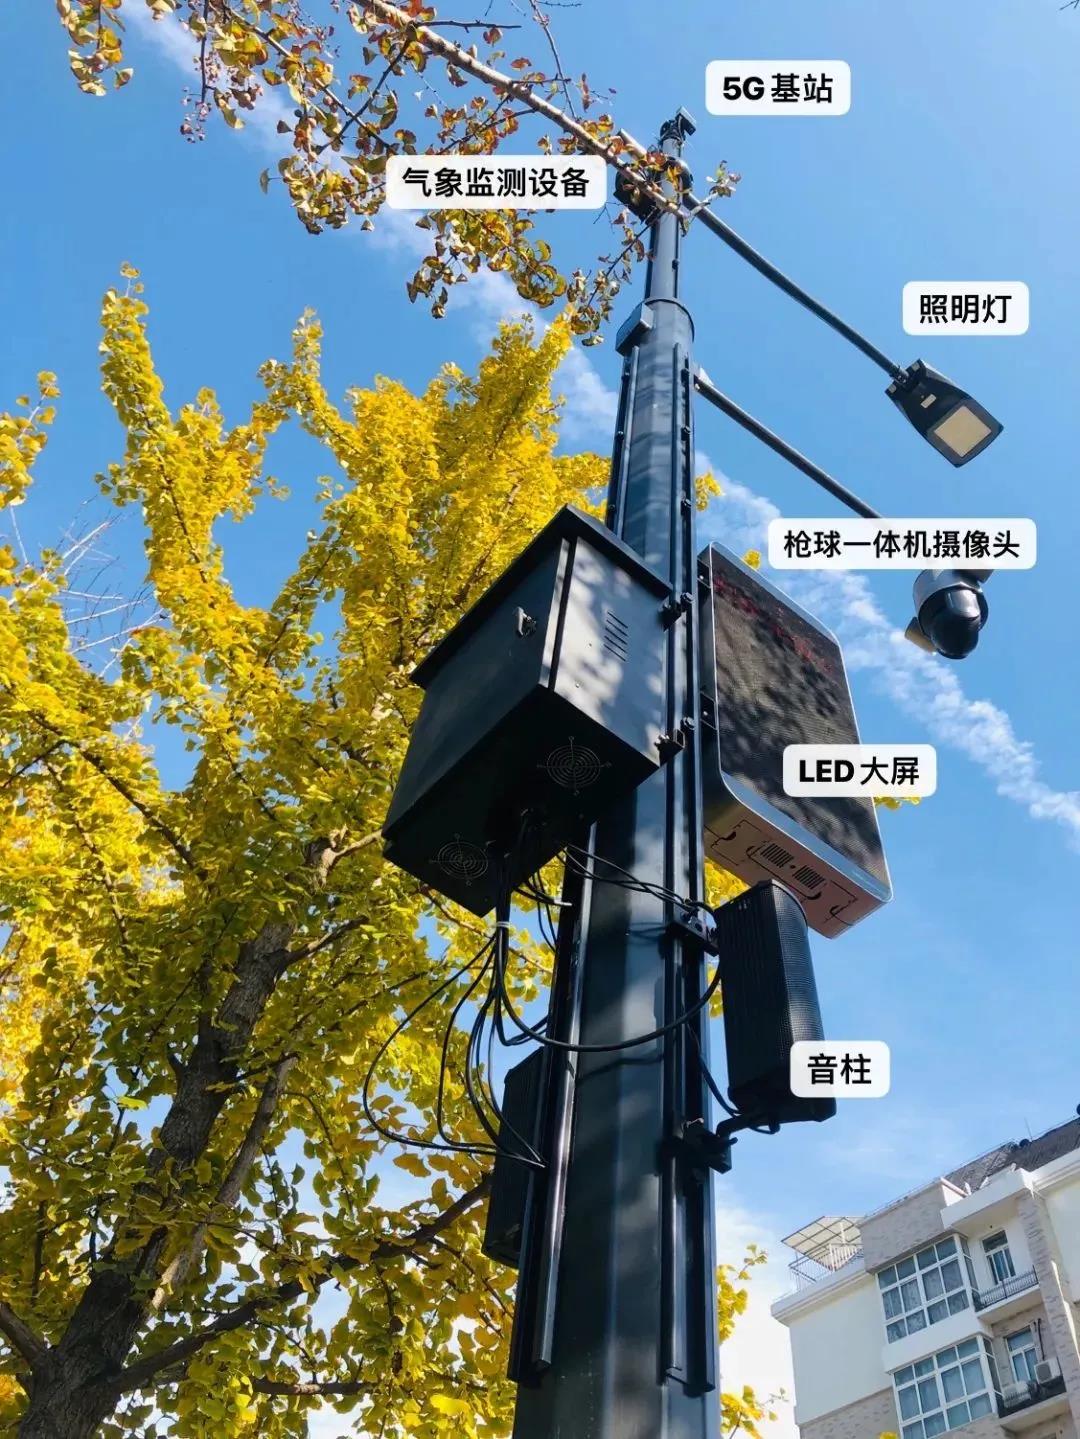 能“看”能“说”会“思考”的智慧路灯在武汉江汉区振兴二路“上岗”